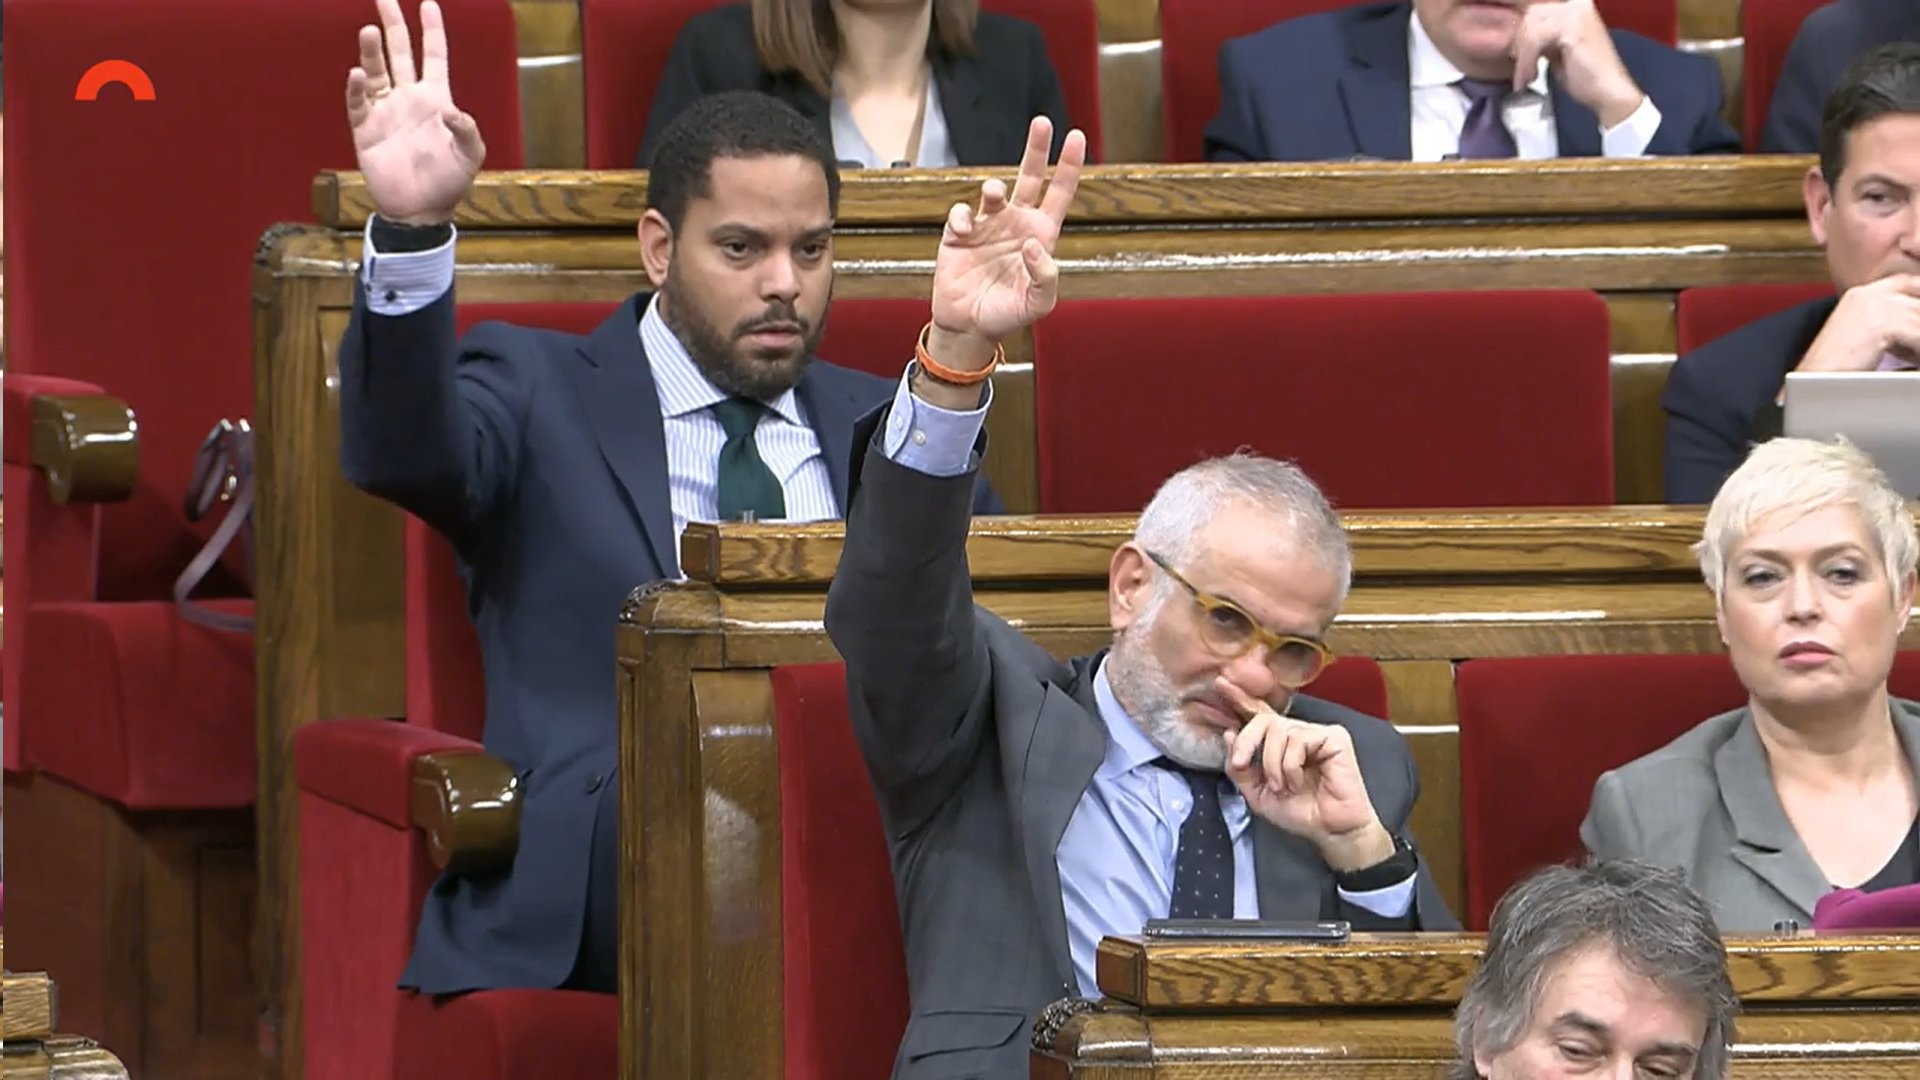 Tensió al Parlament per les paraules de Garriga i Carrizosa contra Wagensberg: "Delinqüents"